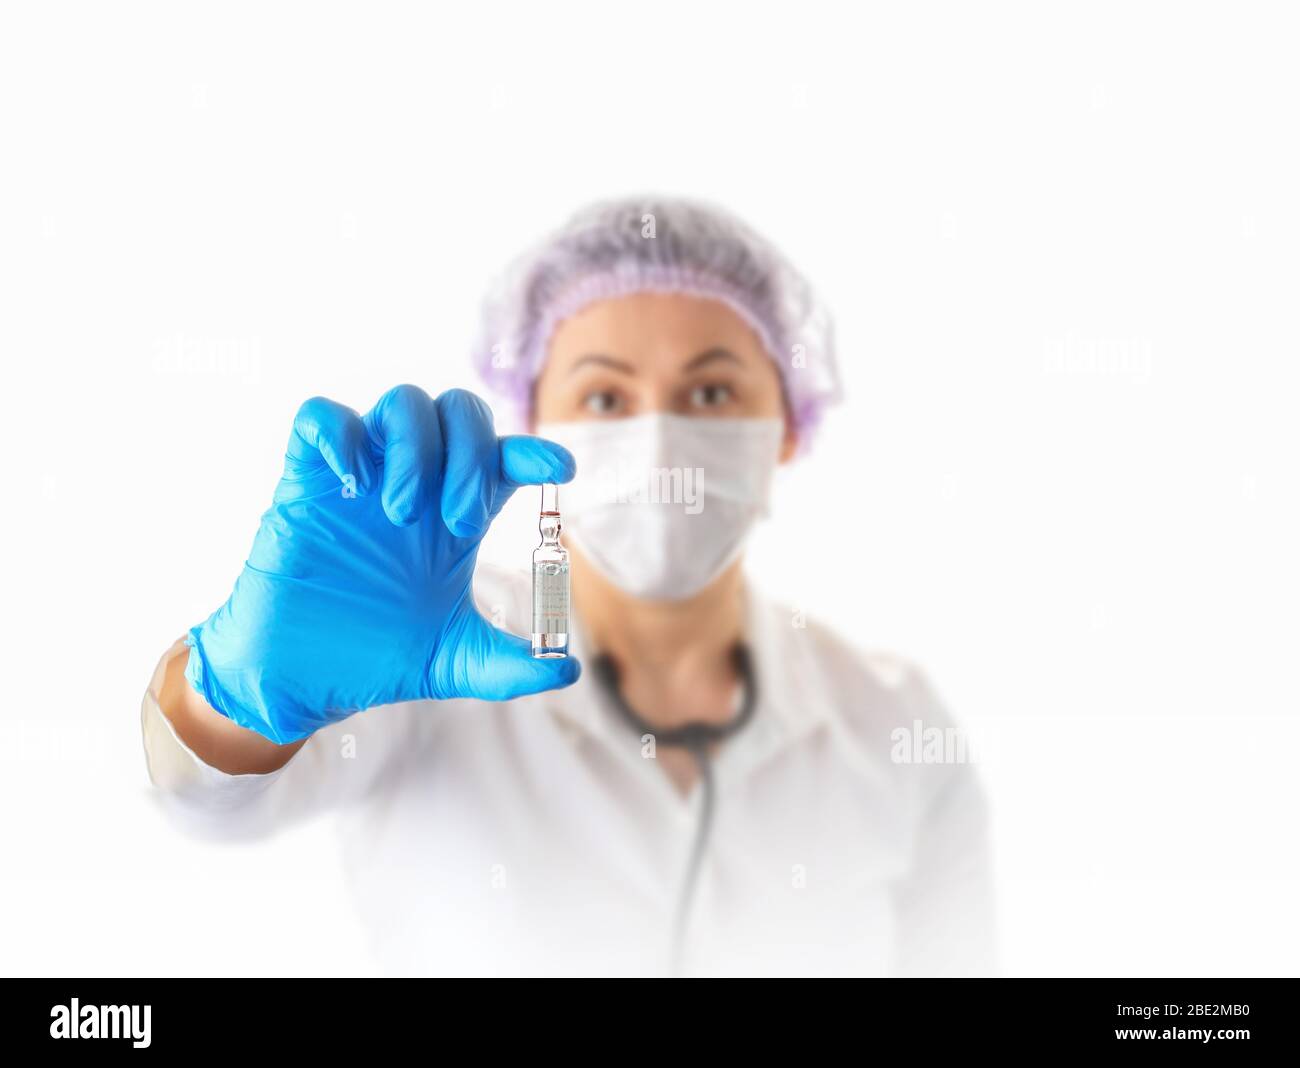 Weibliche Ärztin in medizinischen Schutzmaske und Handschuhe zeigt Impfstoff Ampulle. Prävention und Stop Infektion Konzept. Coronavirus stoppen. Konzentrieren Sie sich auf die Hand. Stockfoto